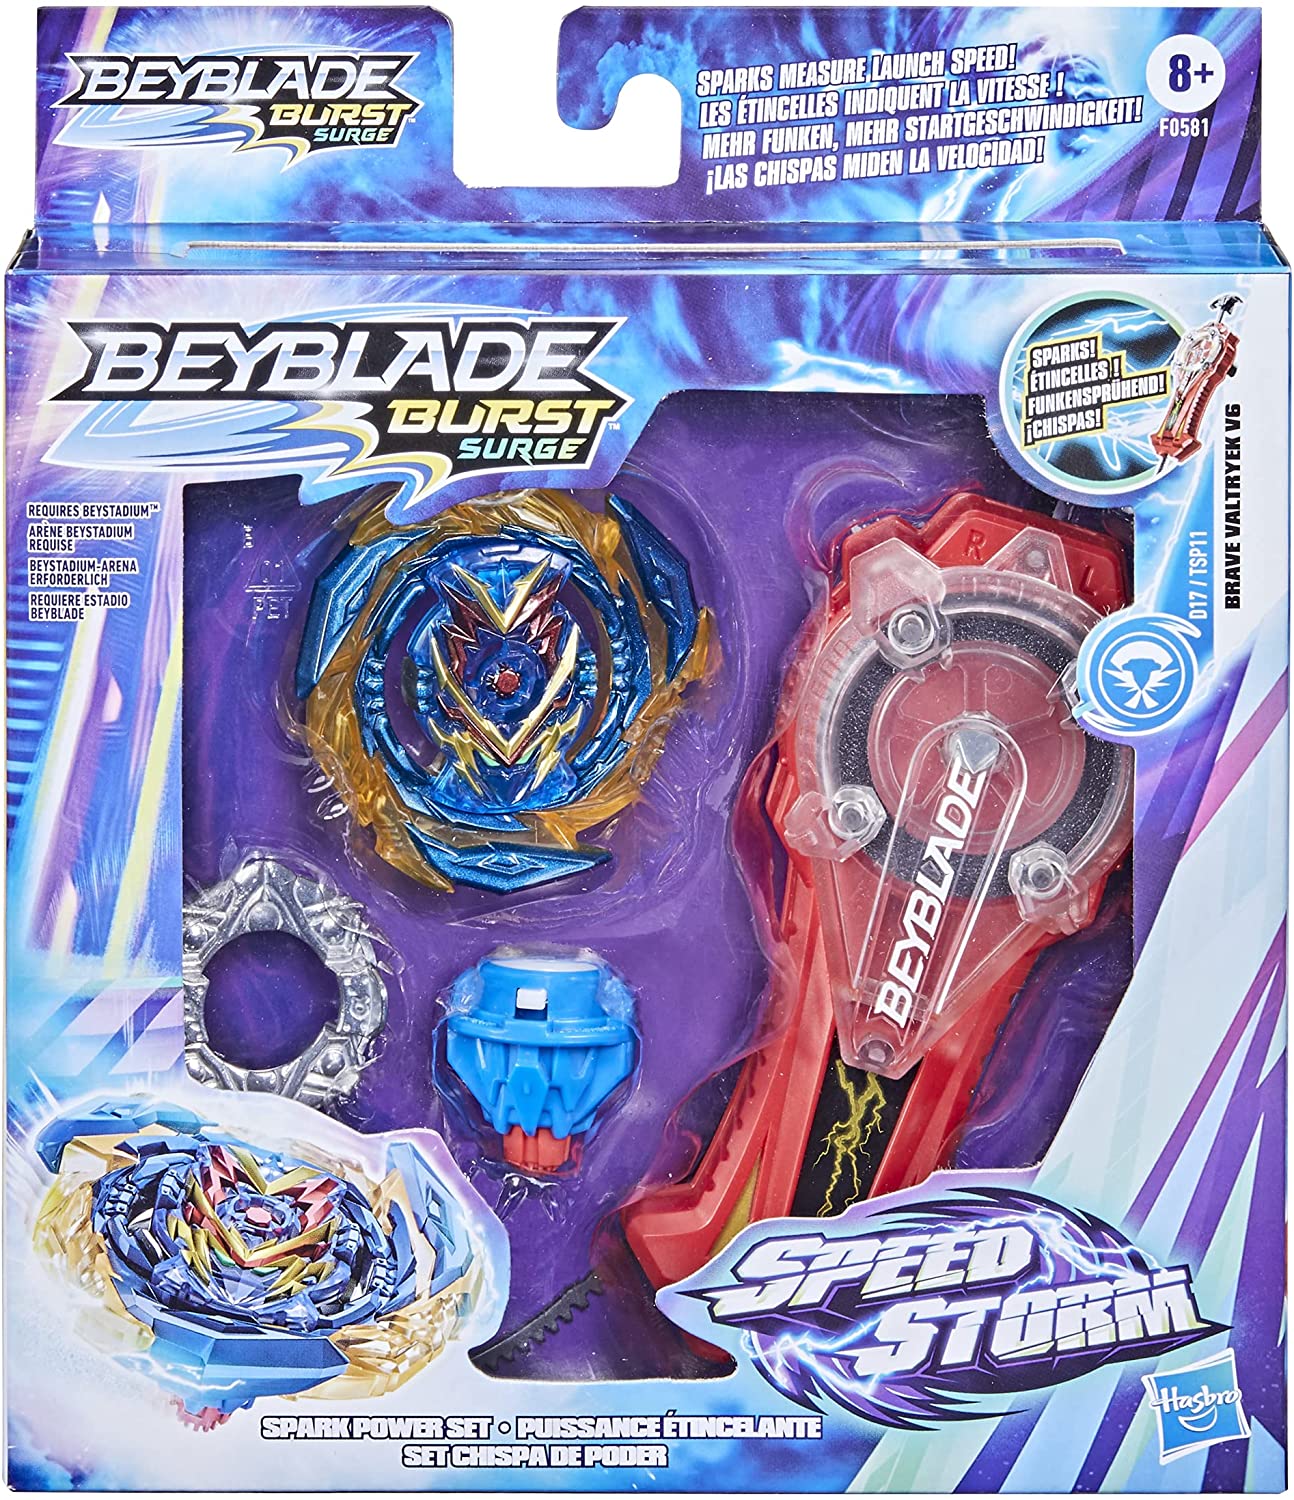 Beyblade (toy), Beyblade Wiki